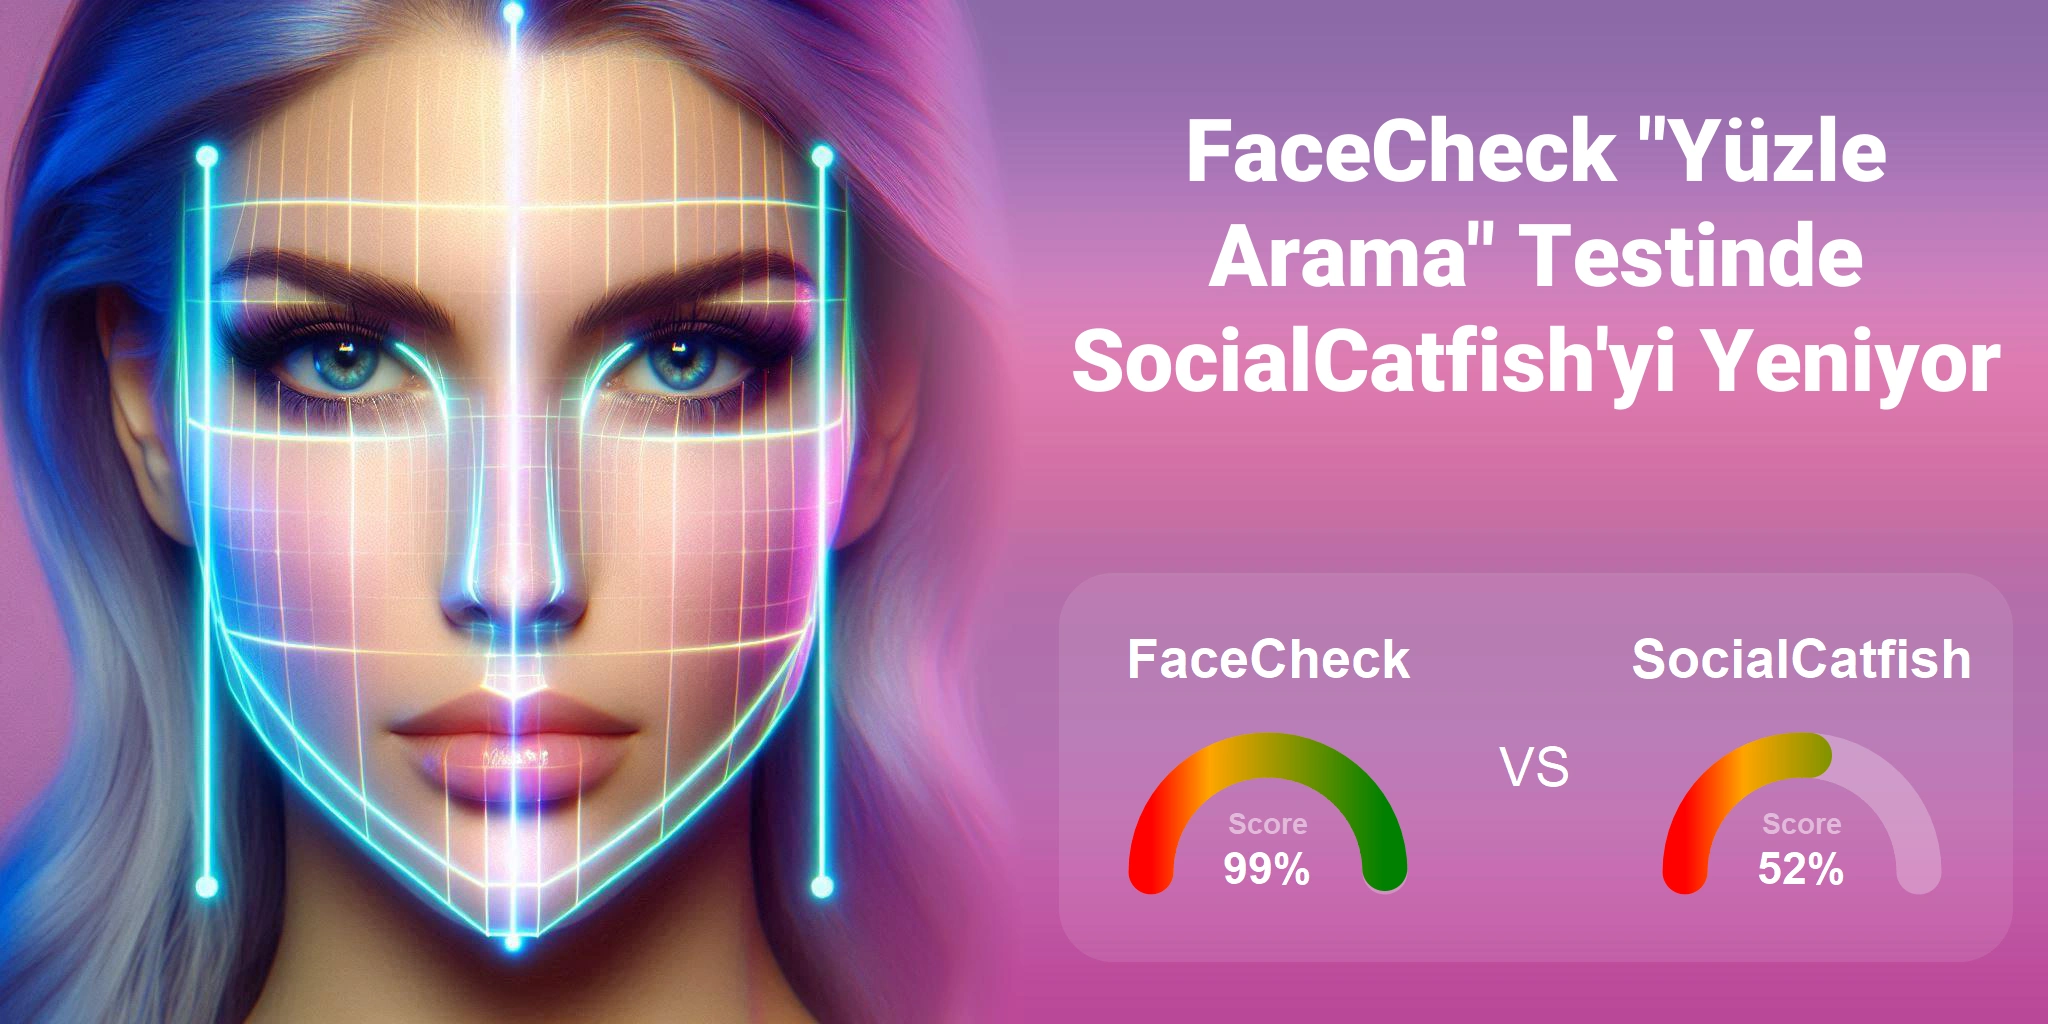 Yüz Araması için Hangisi Daha İyi: <br>FaceCheck veya SocialCatfish?